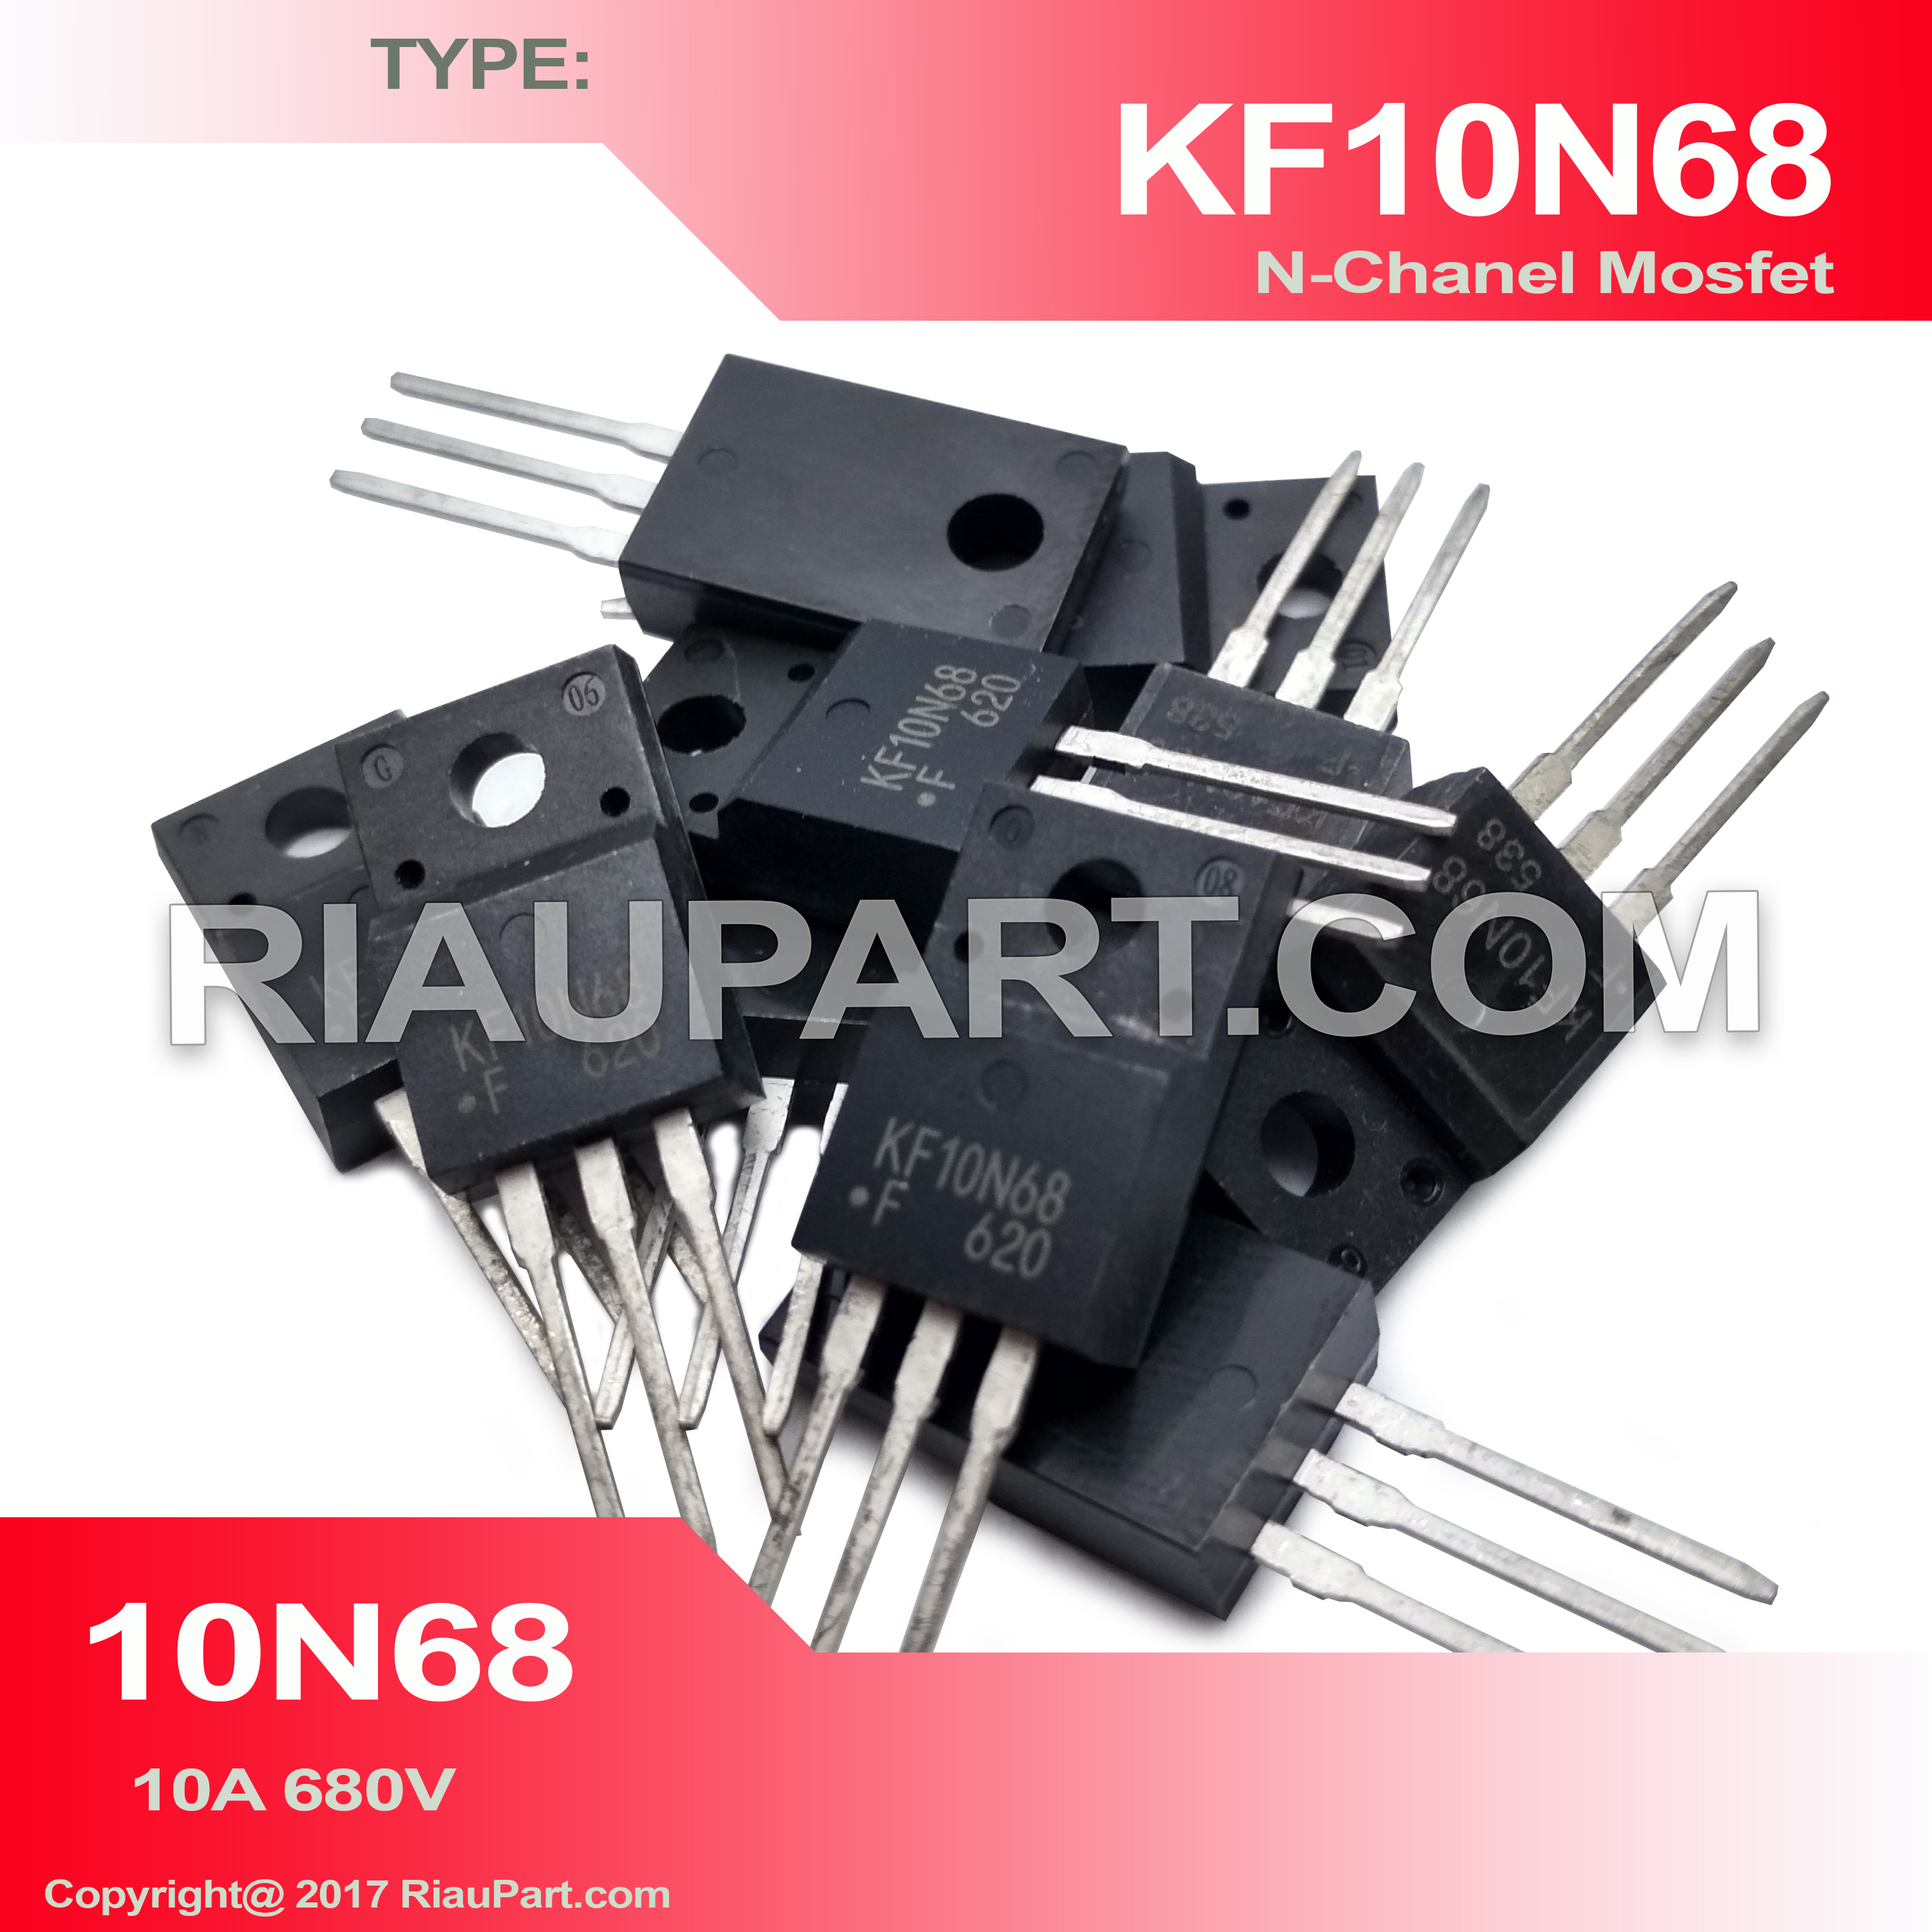 ORIGINAL IC KF10N68 10N68 10A 680V N-CHANEL MOSFET